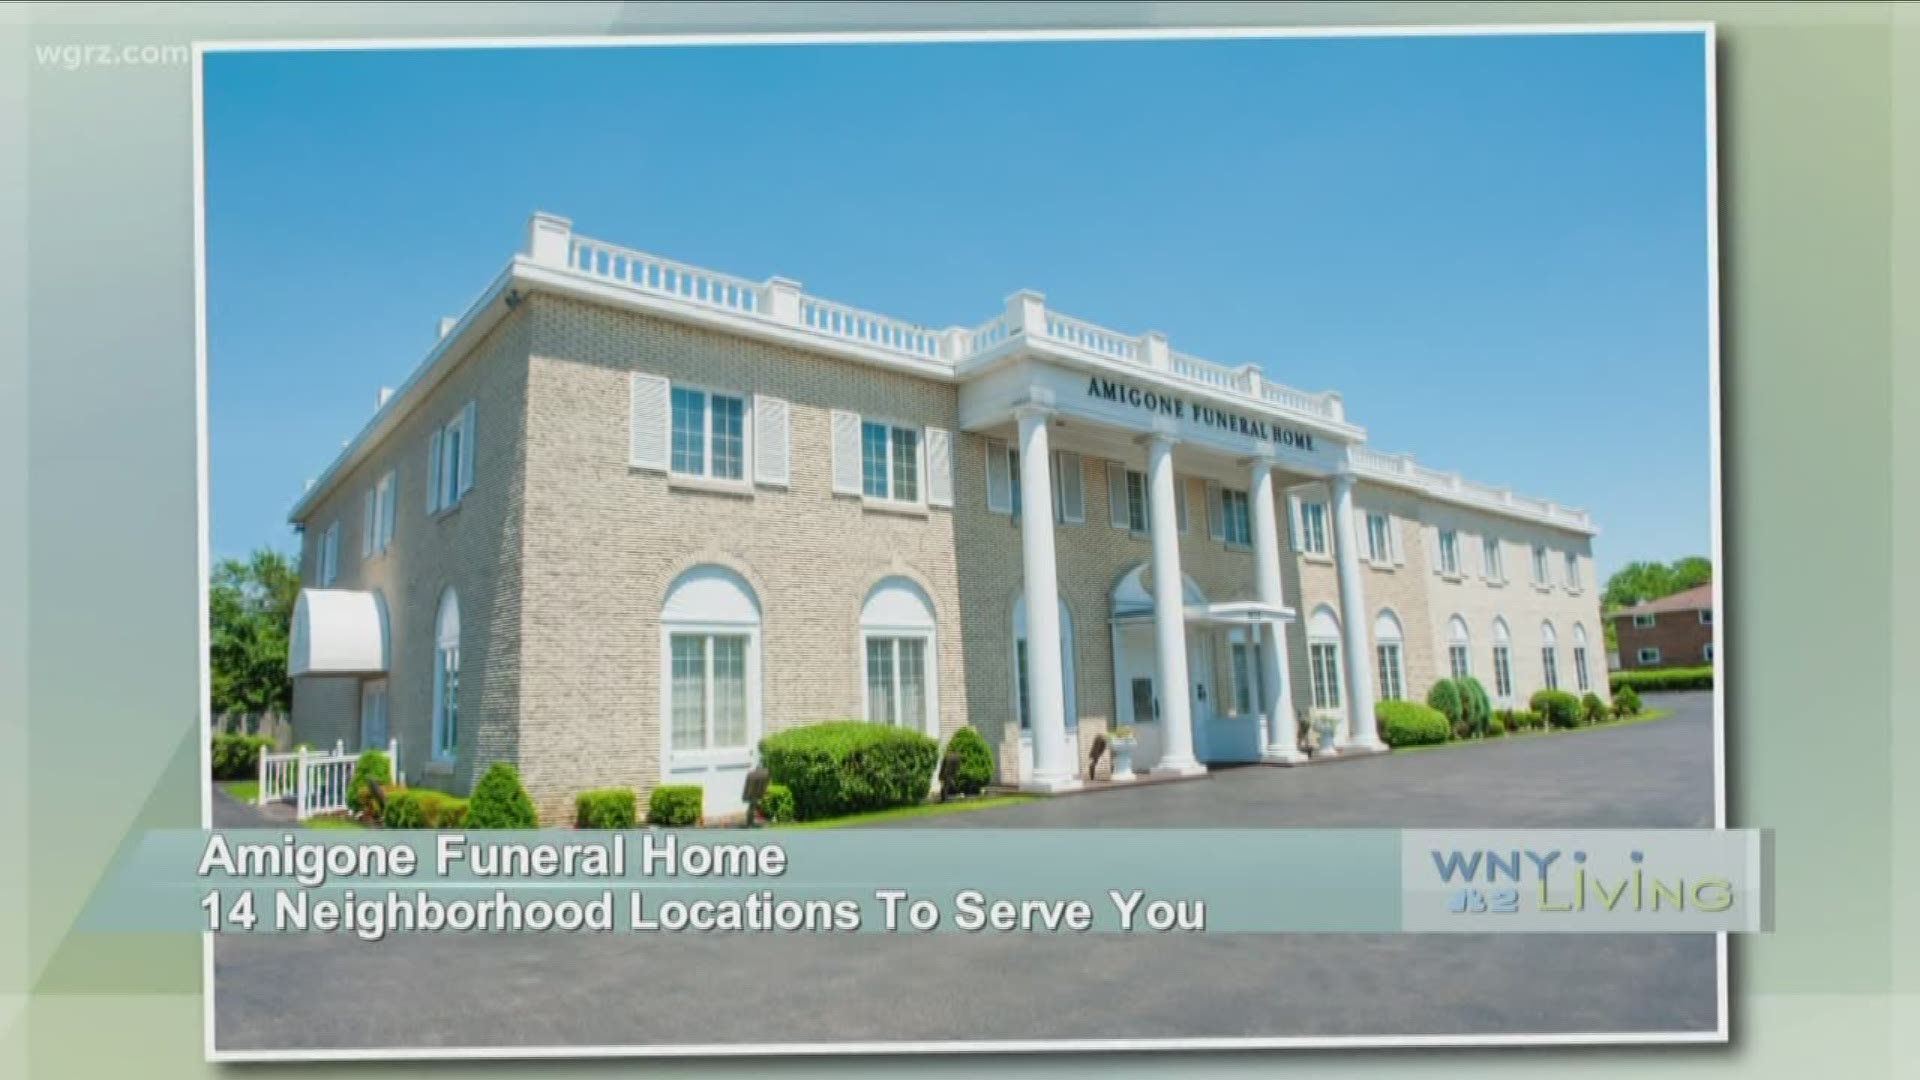 September 21 - Amigone Funeral Home